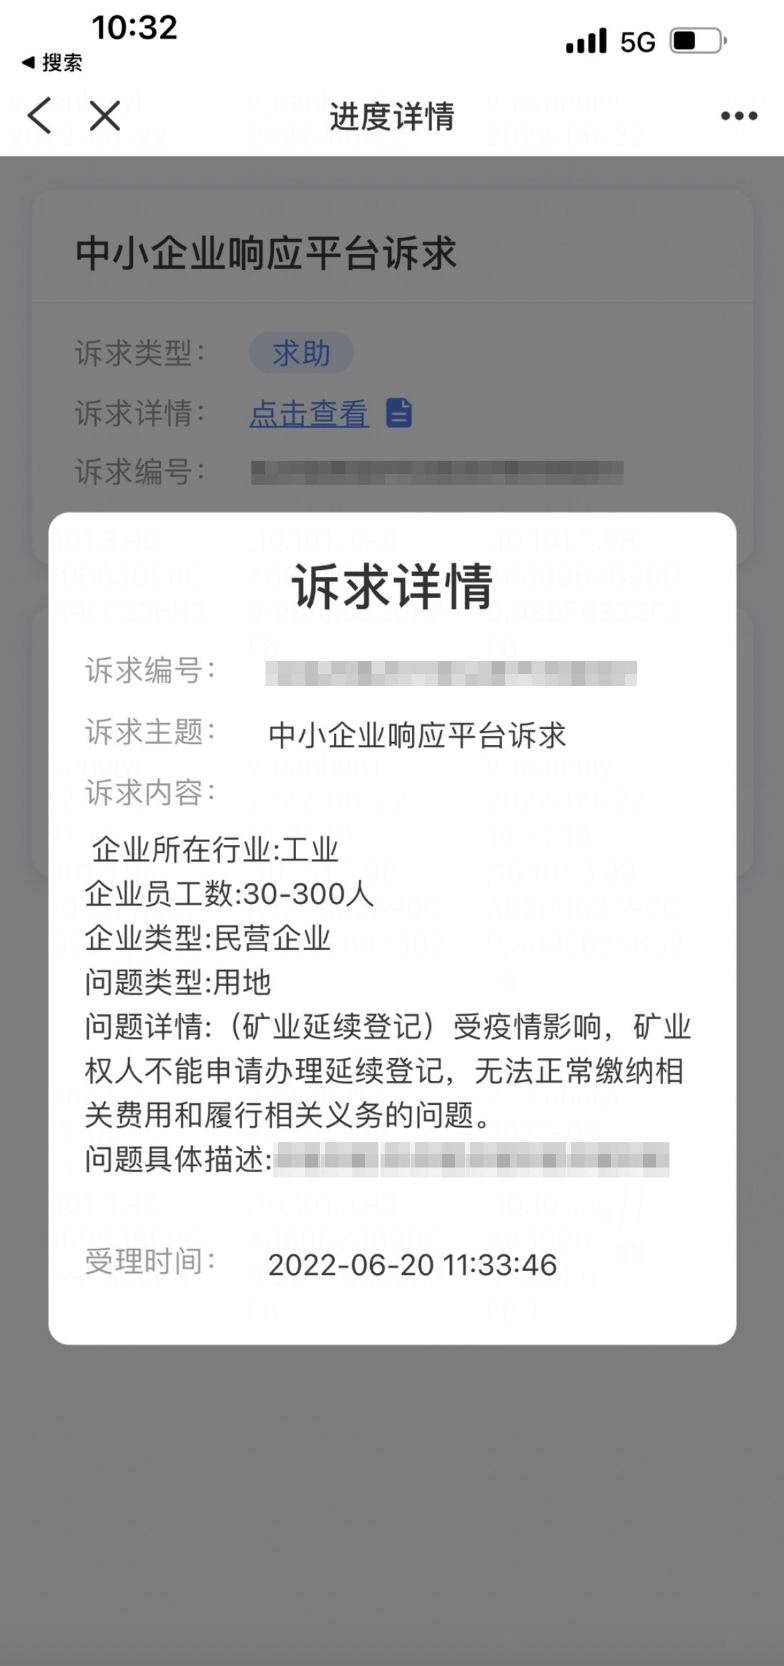 5粵商通App訴求響應平台.png